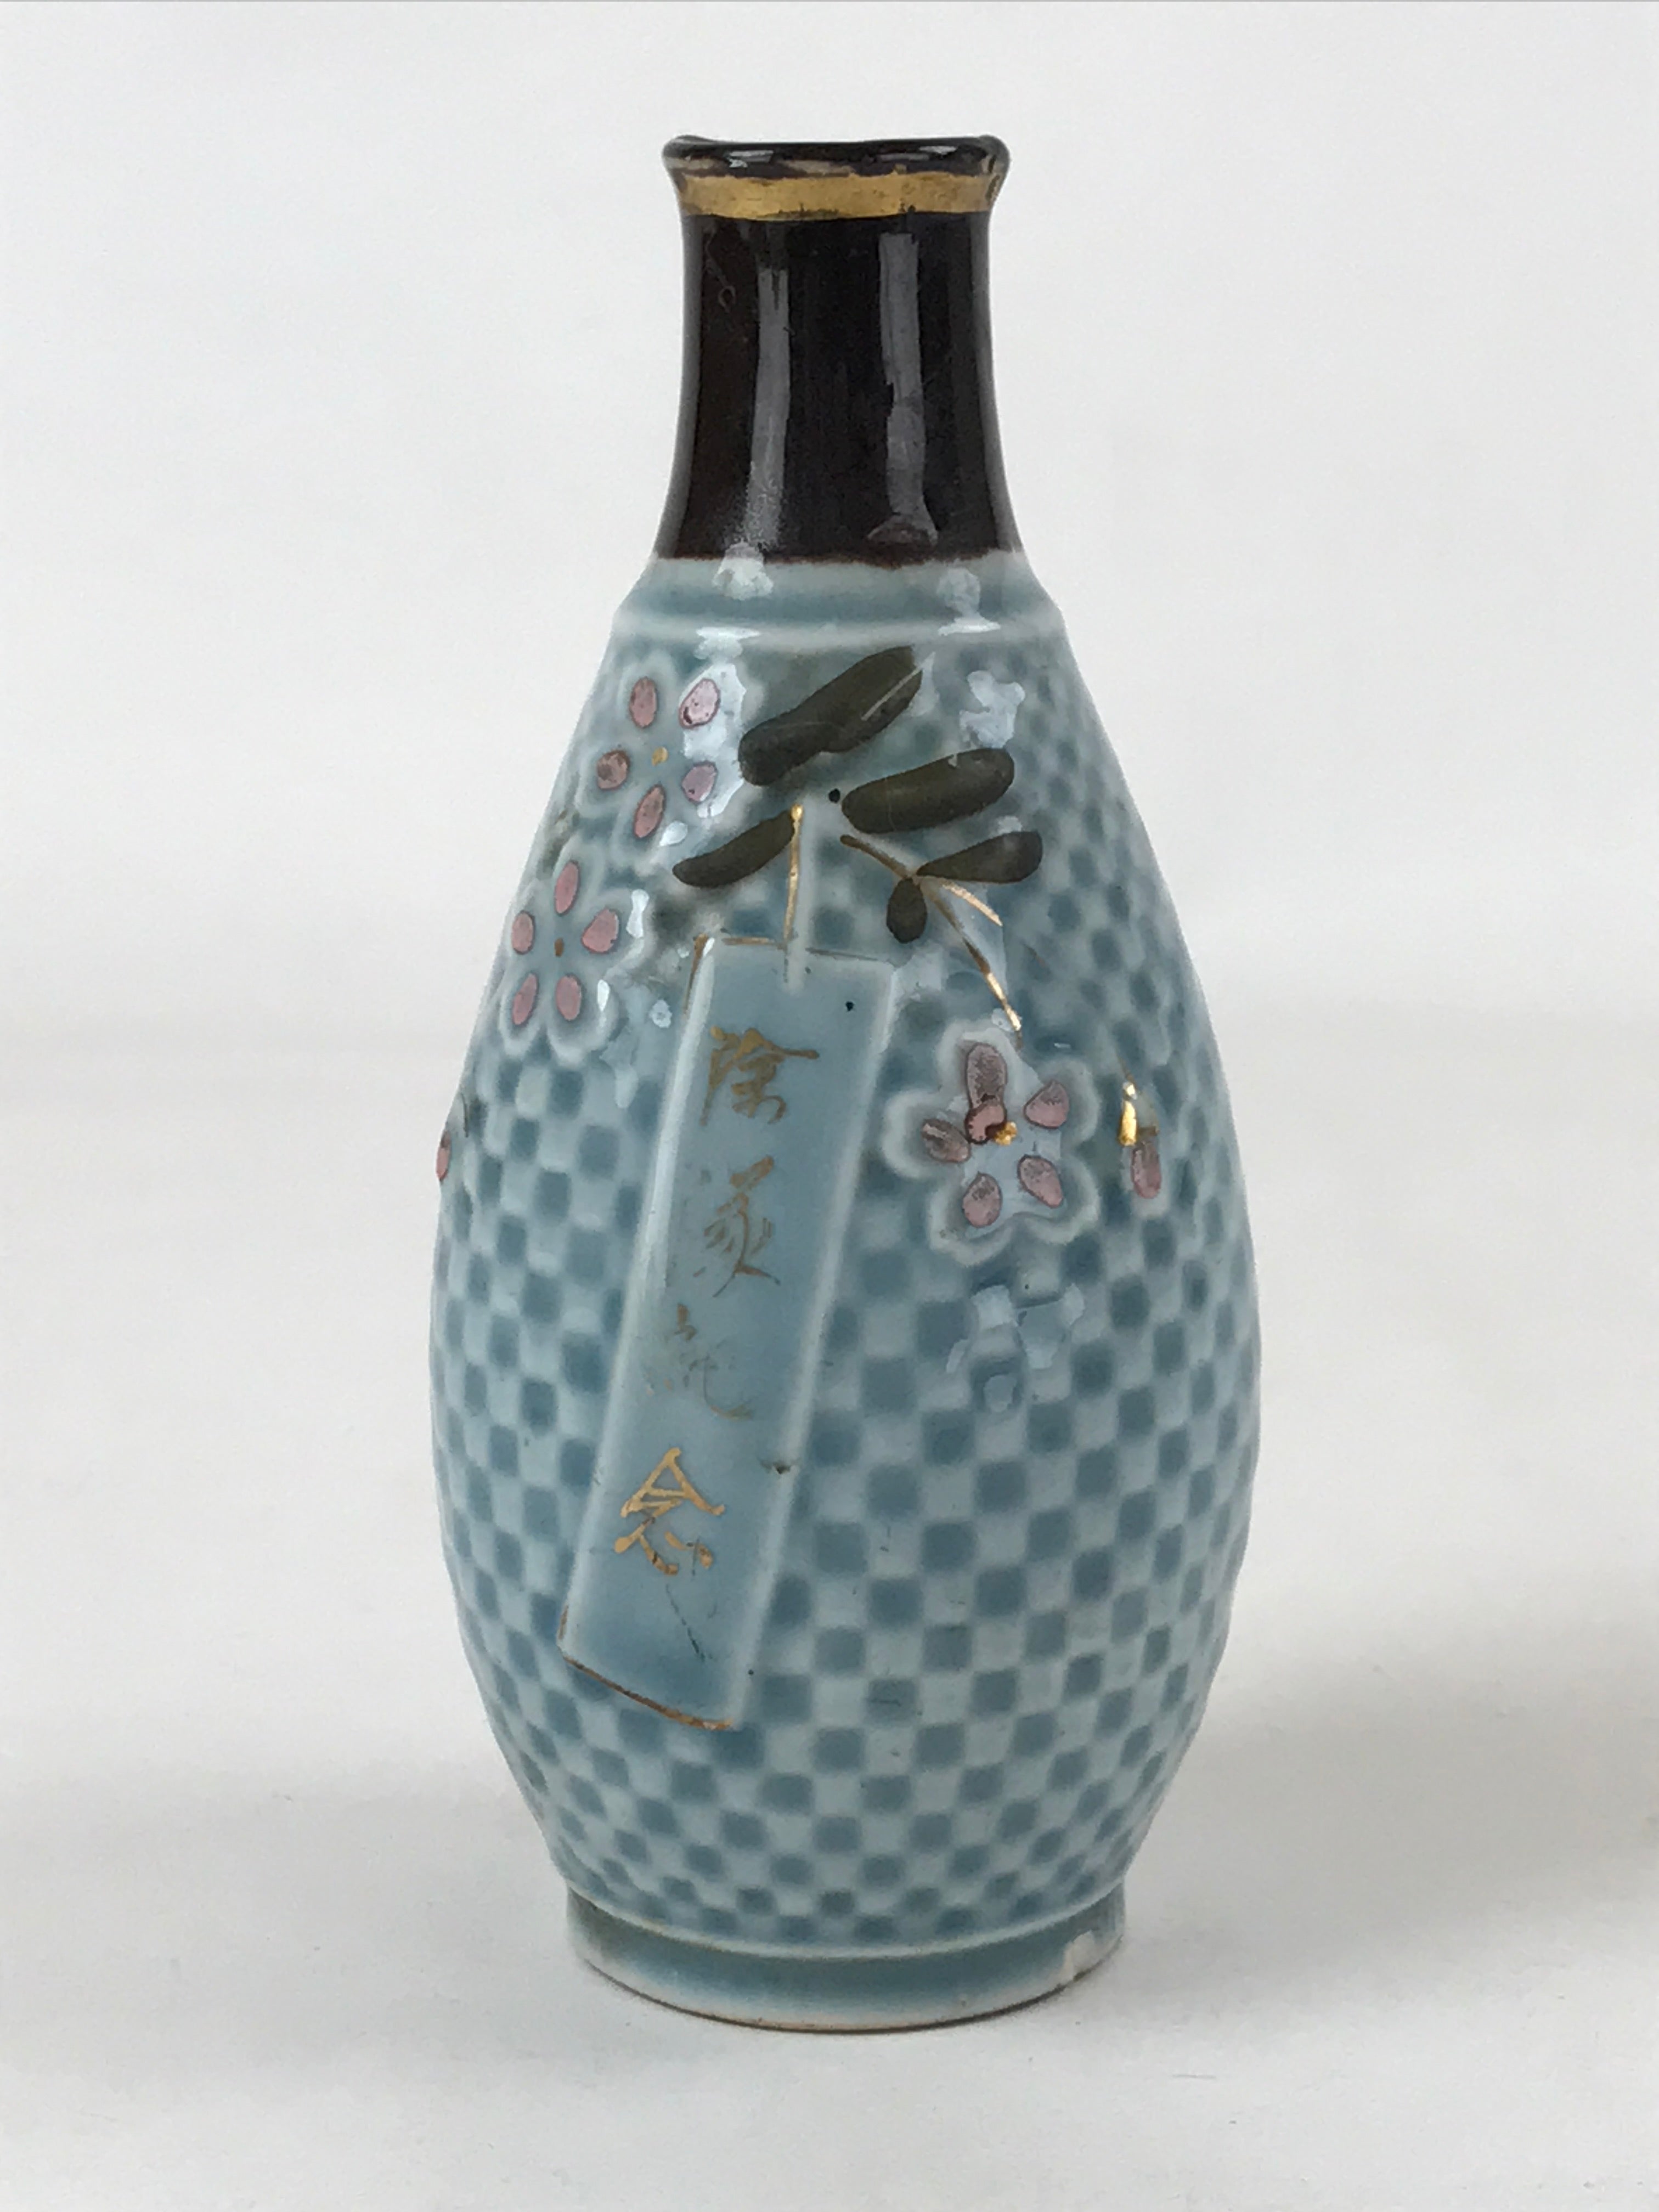 Japanese Sake Bottle Porcelain Tokkuri Vtg Military Commemorative Blue TS598